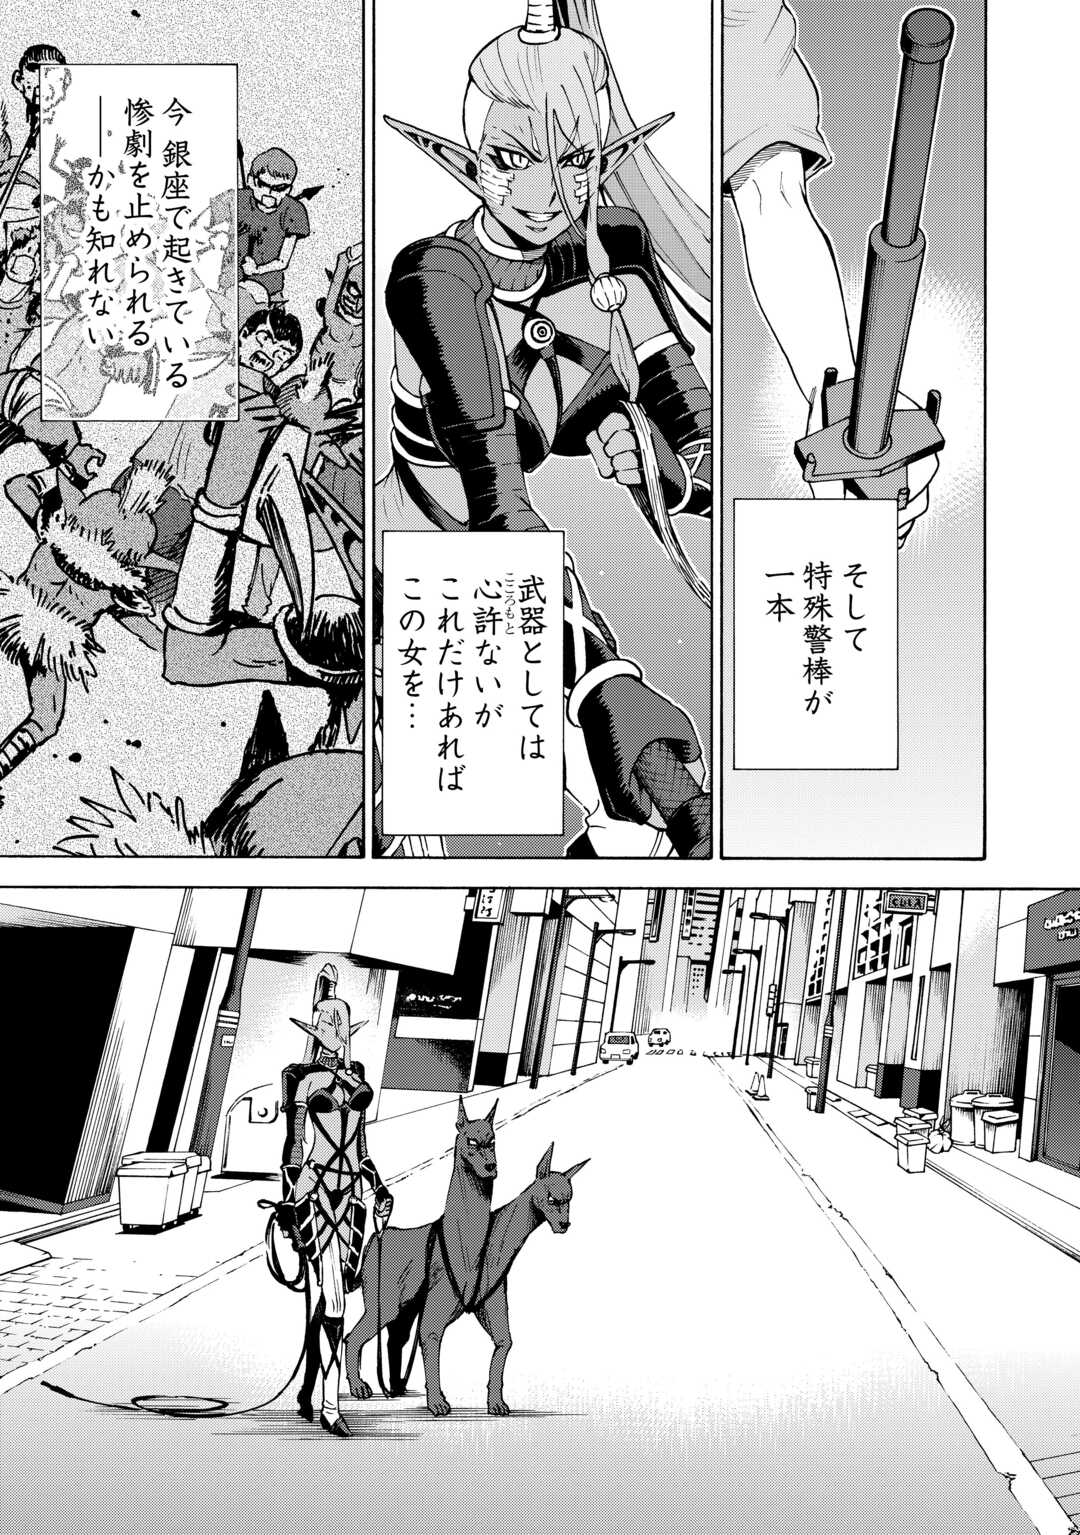 ゲート0 -zero- 自衛隊 銀座にて、斯く戦えり 第4話 - Page 3